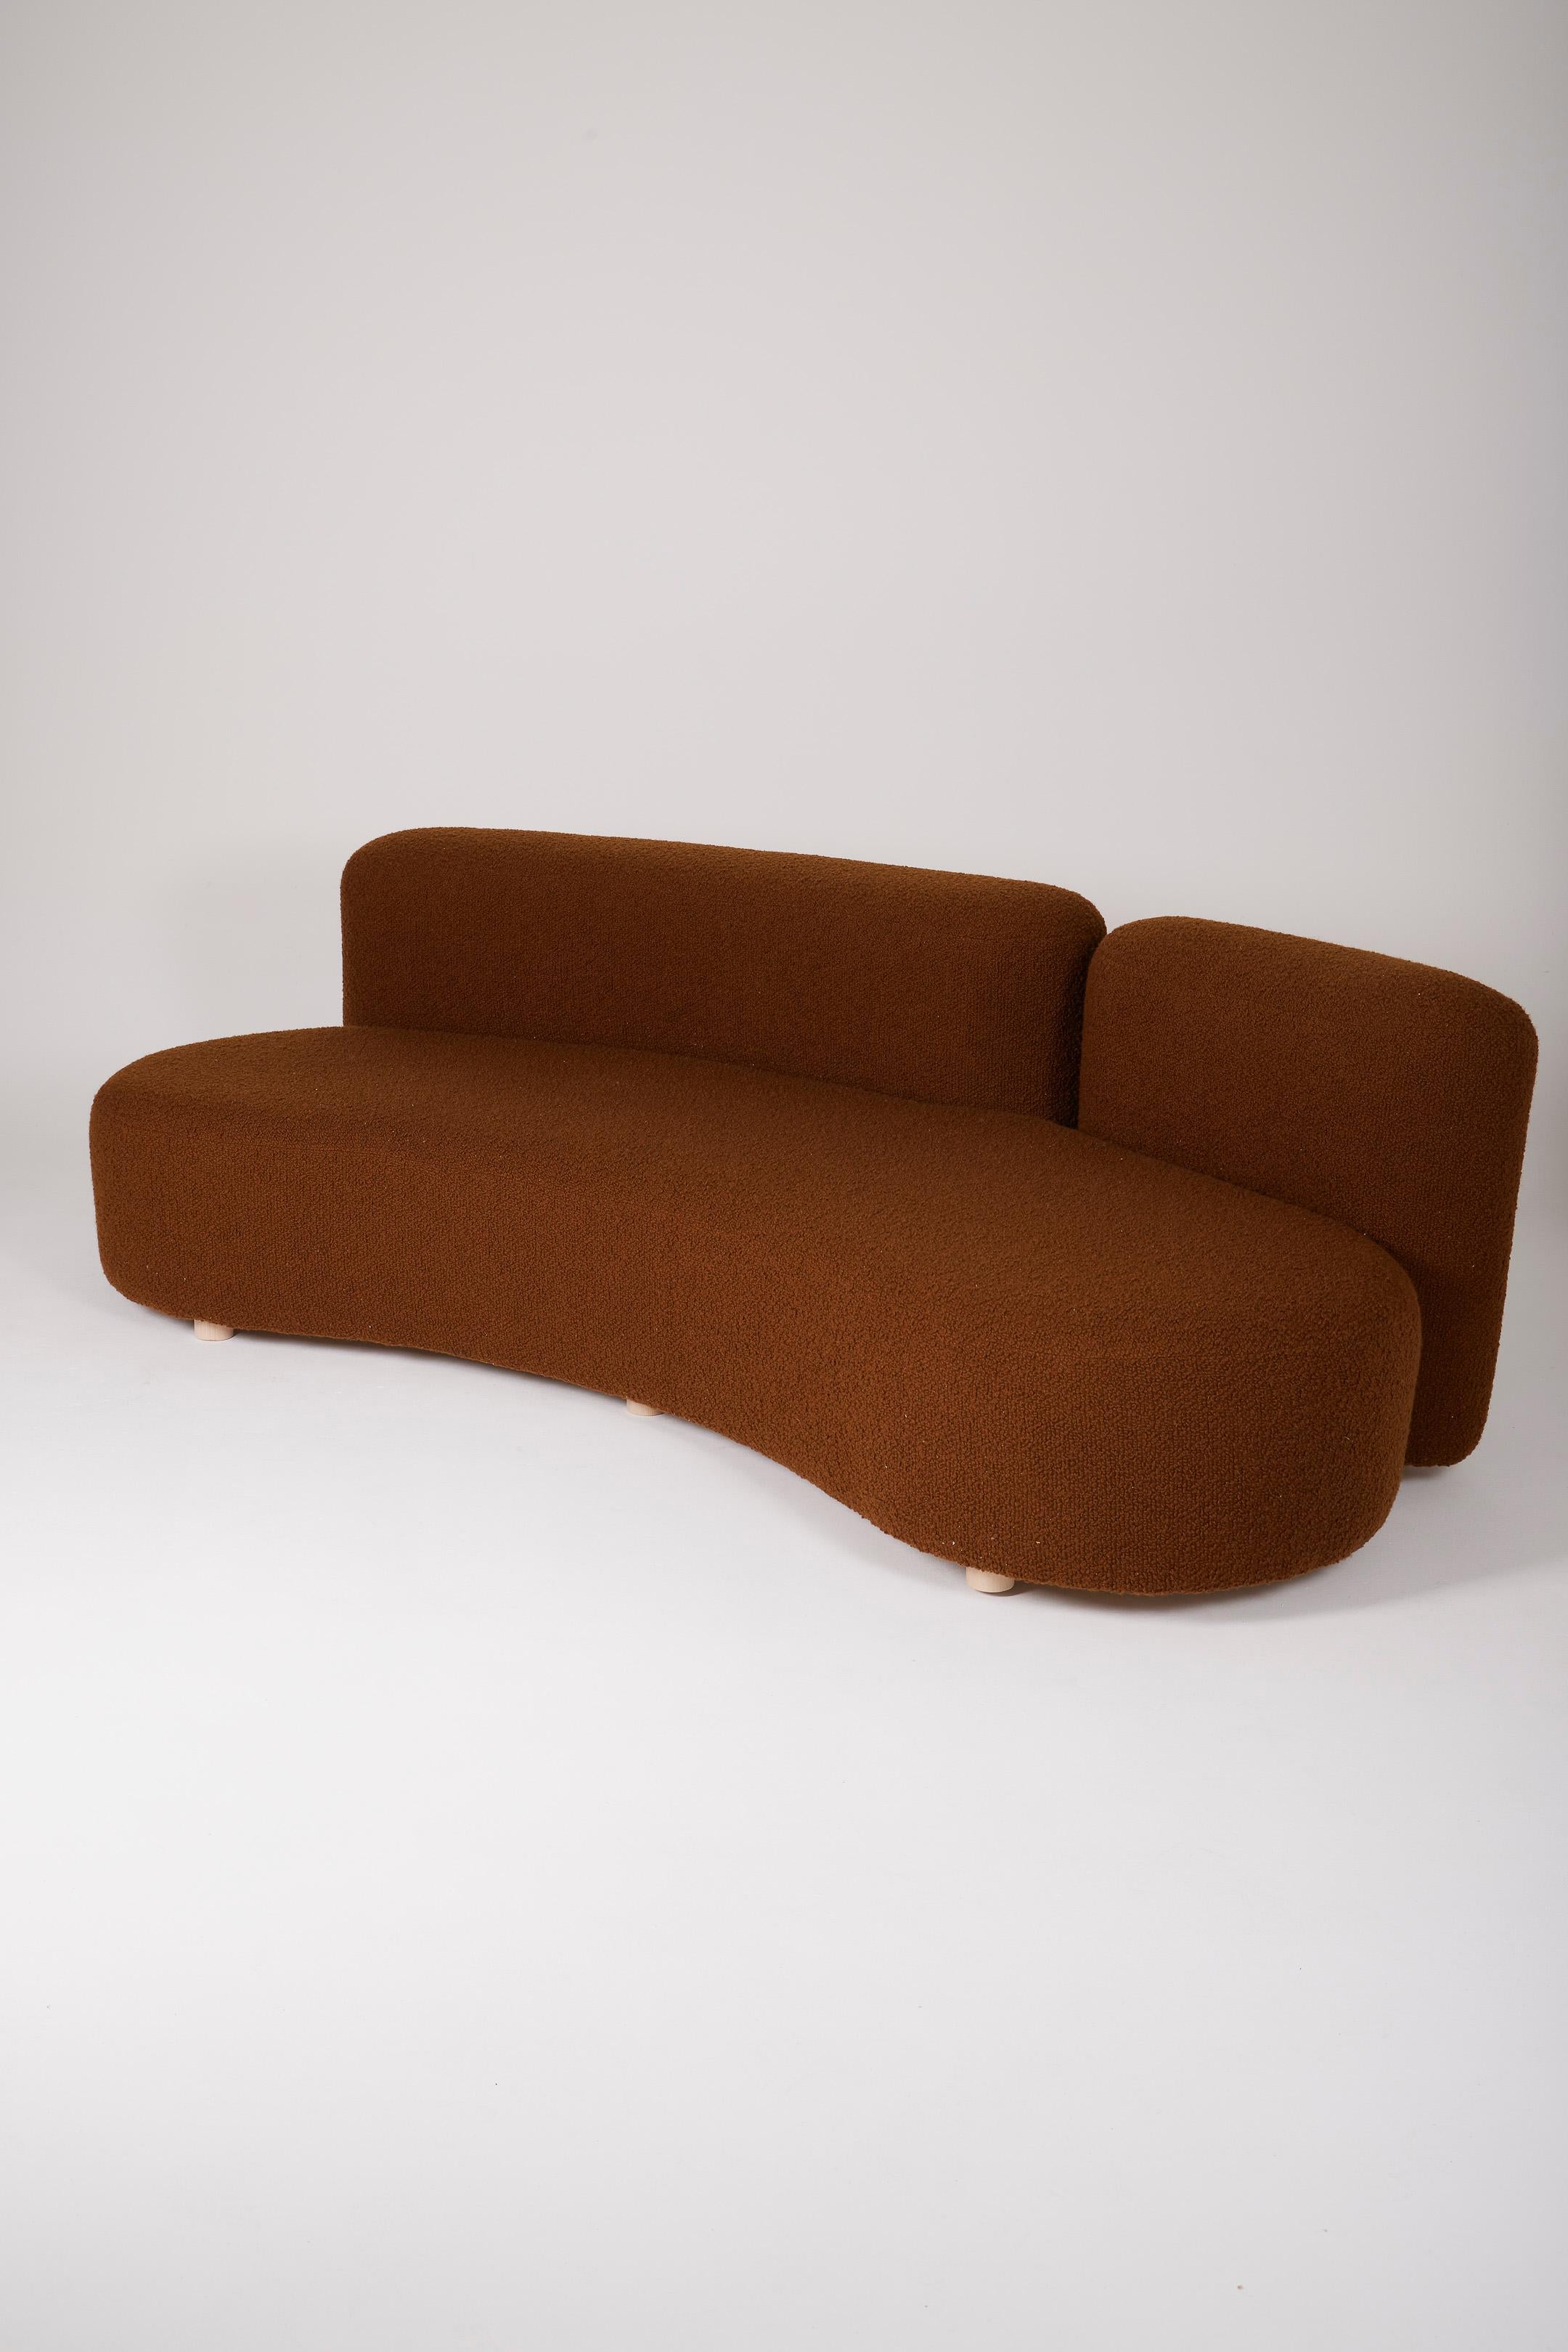 3-Sitzer-Sofa aus braunem Bouclé-Stoff aus den 1970er Jahren. Das Sofa wird mit seinen 6 Kissen geliefert. Ausgezeichneter Zustand.
DV525